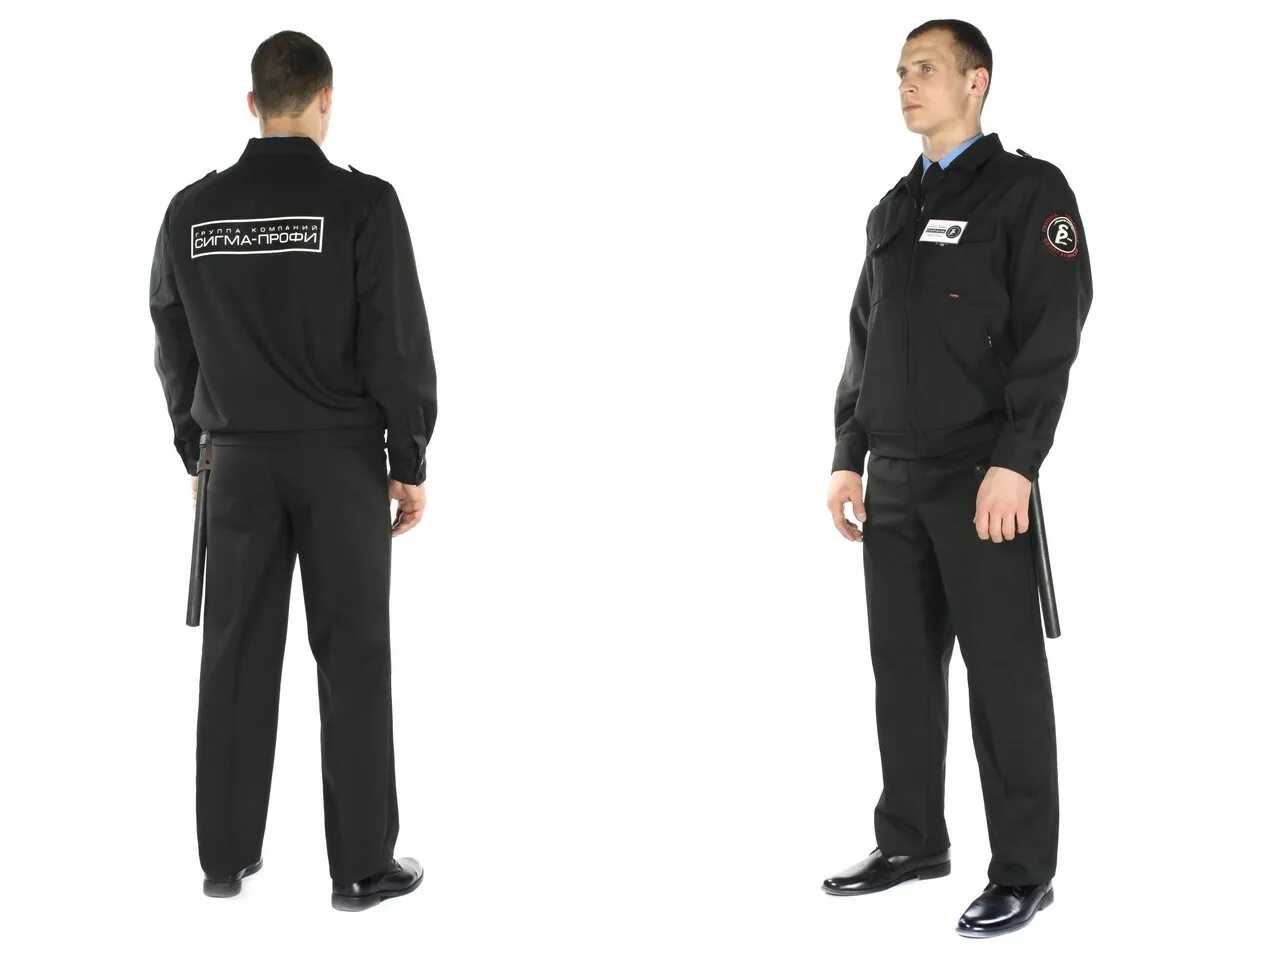 Сигма профи одежда для охранников. Форма охранника. Форма сотрудника охраны. Форменная одежда для охраны.